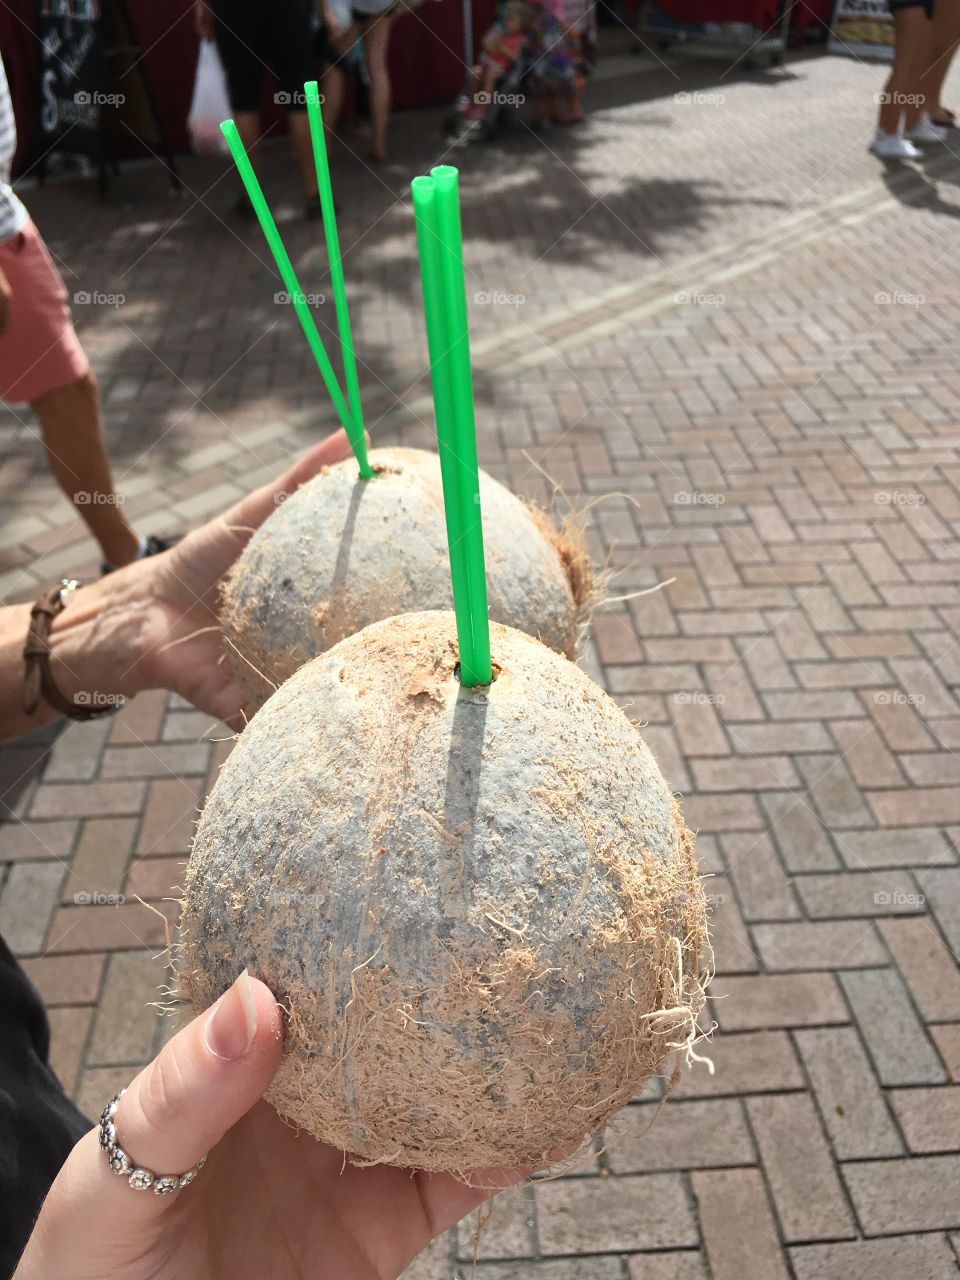 Coconuts 